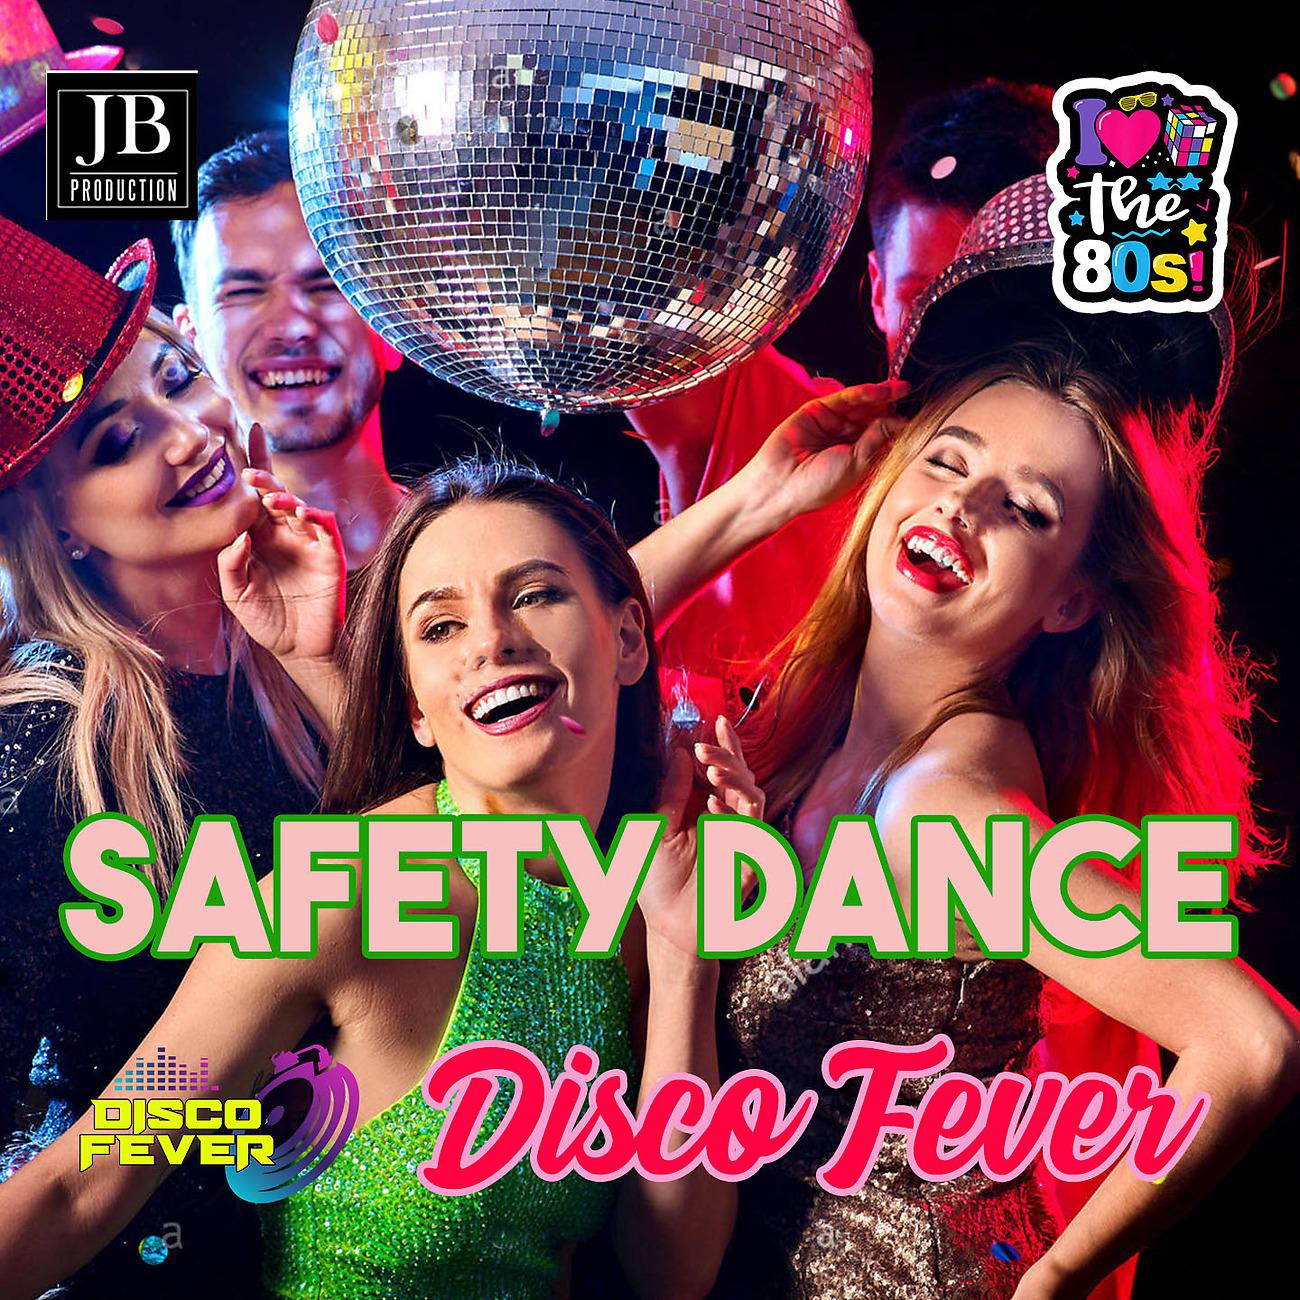 Постер альбома Safety Dance